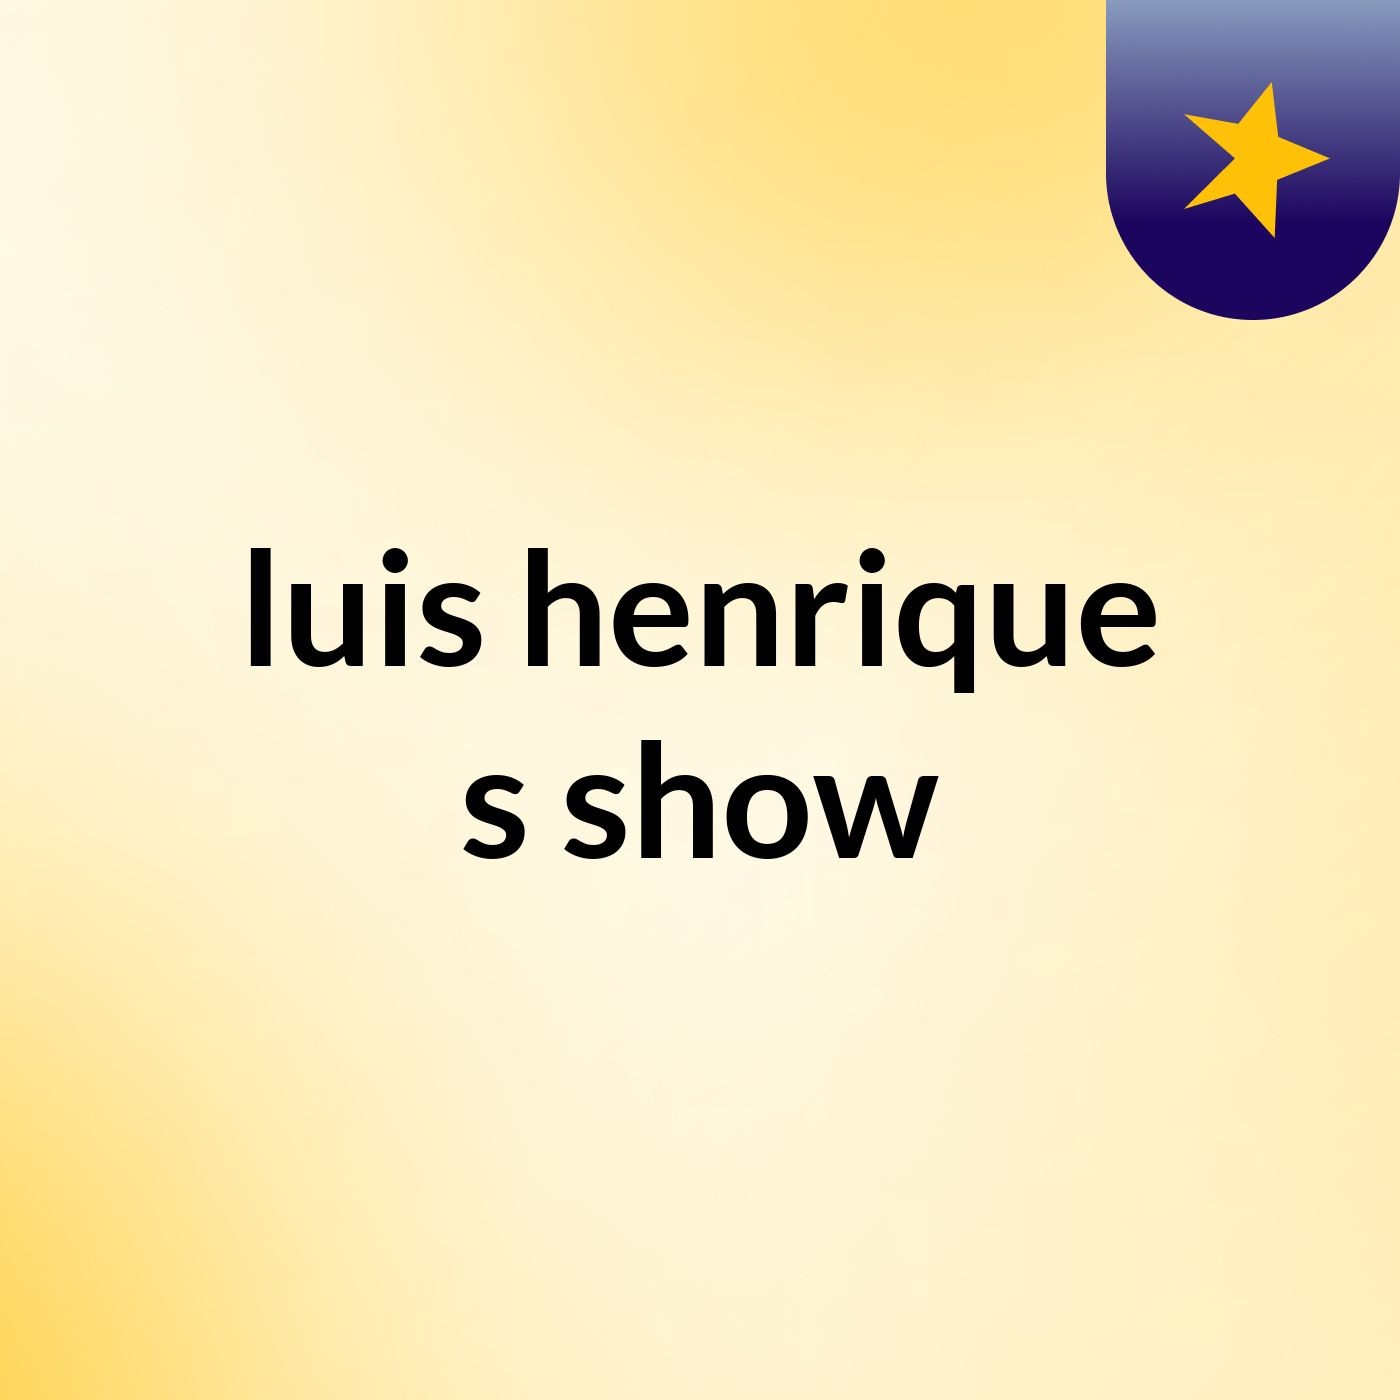 luis henrique's show